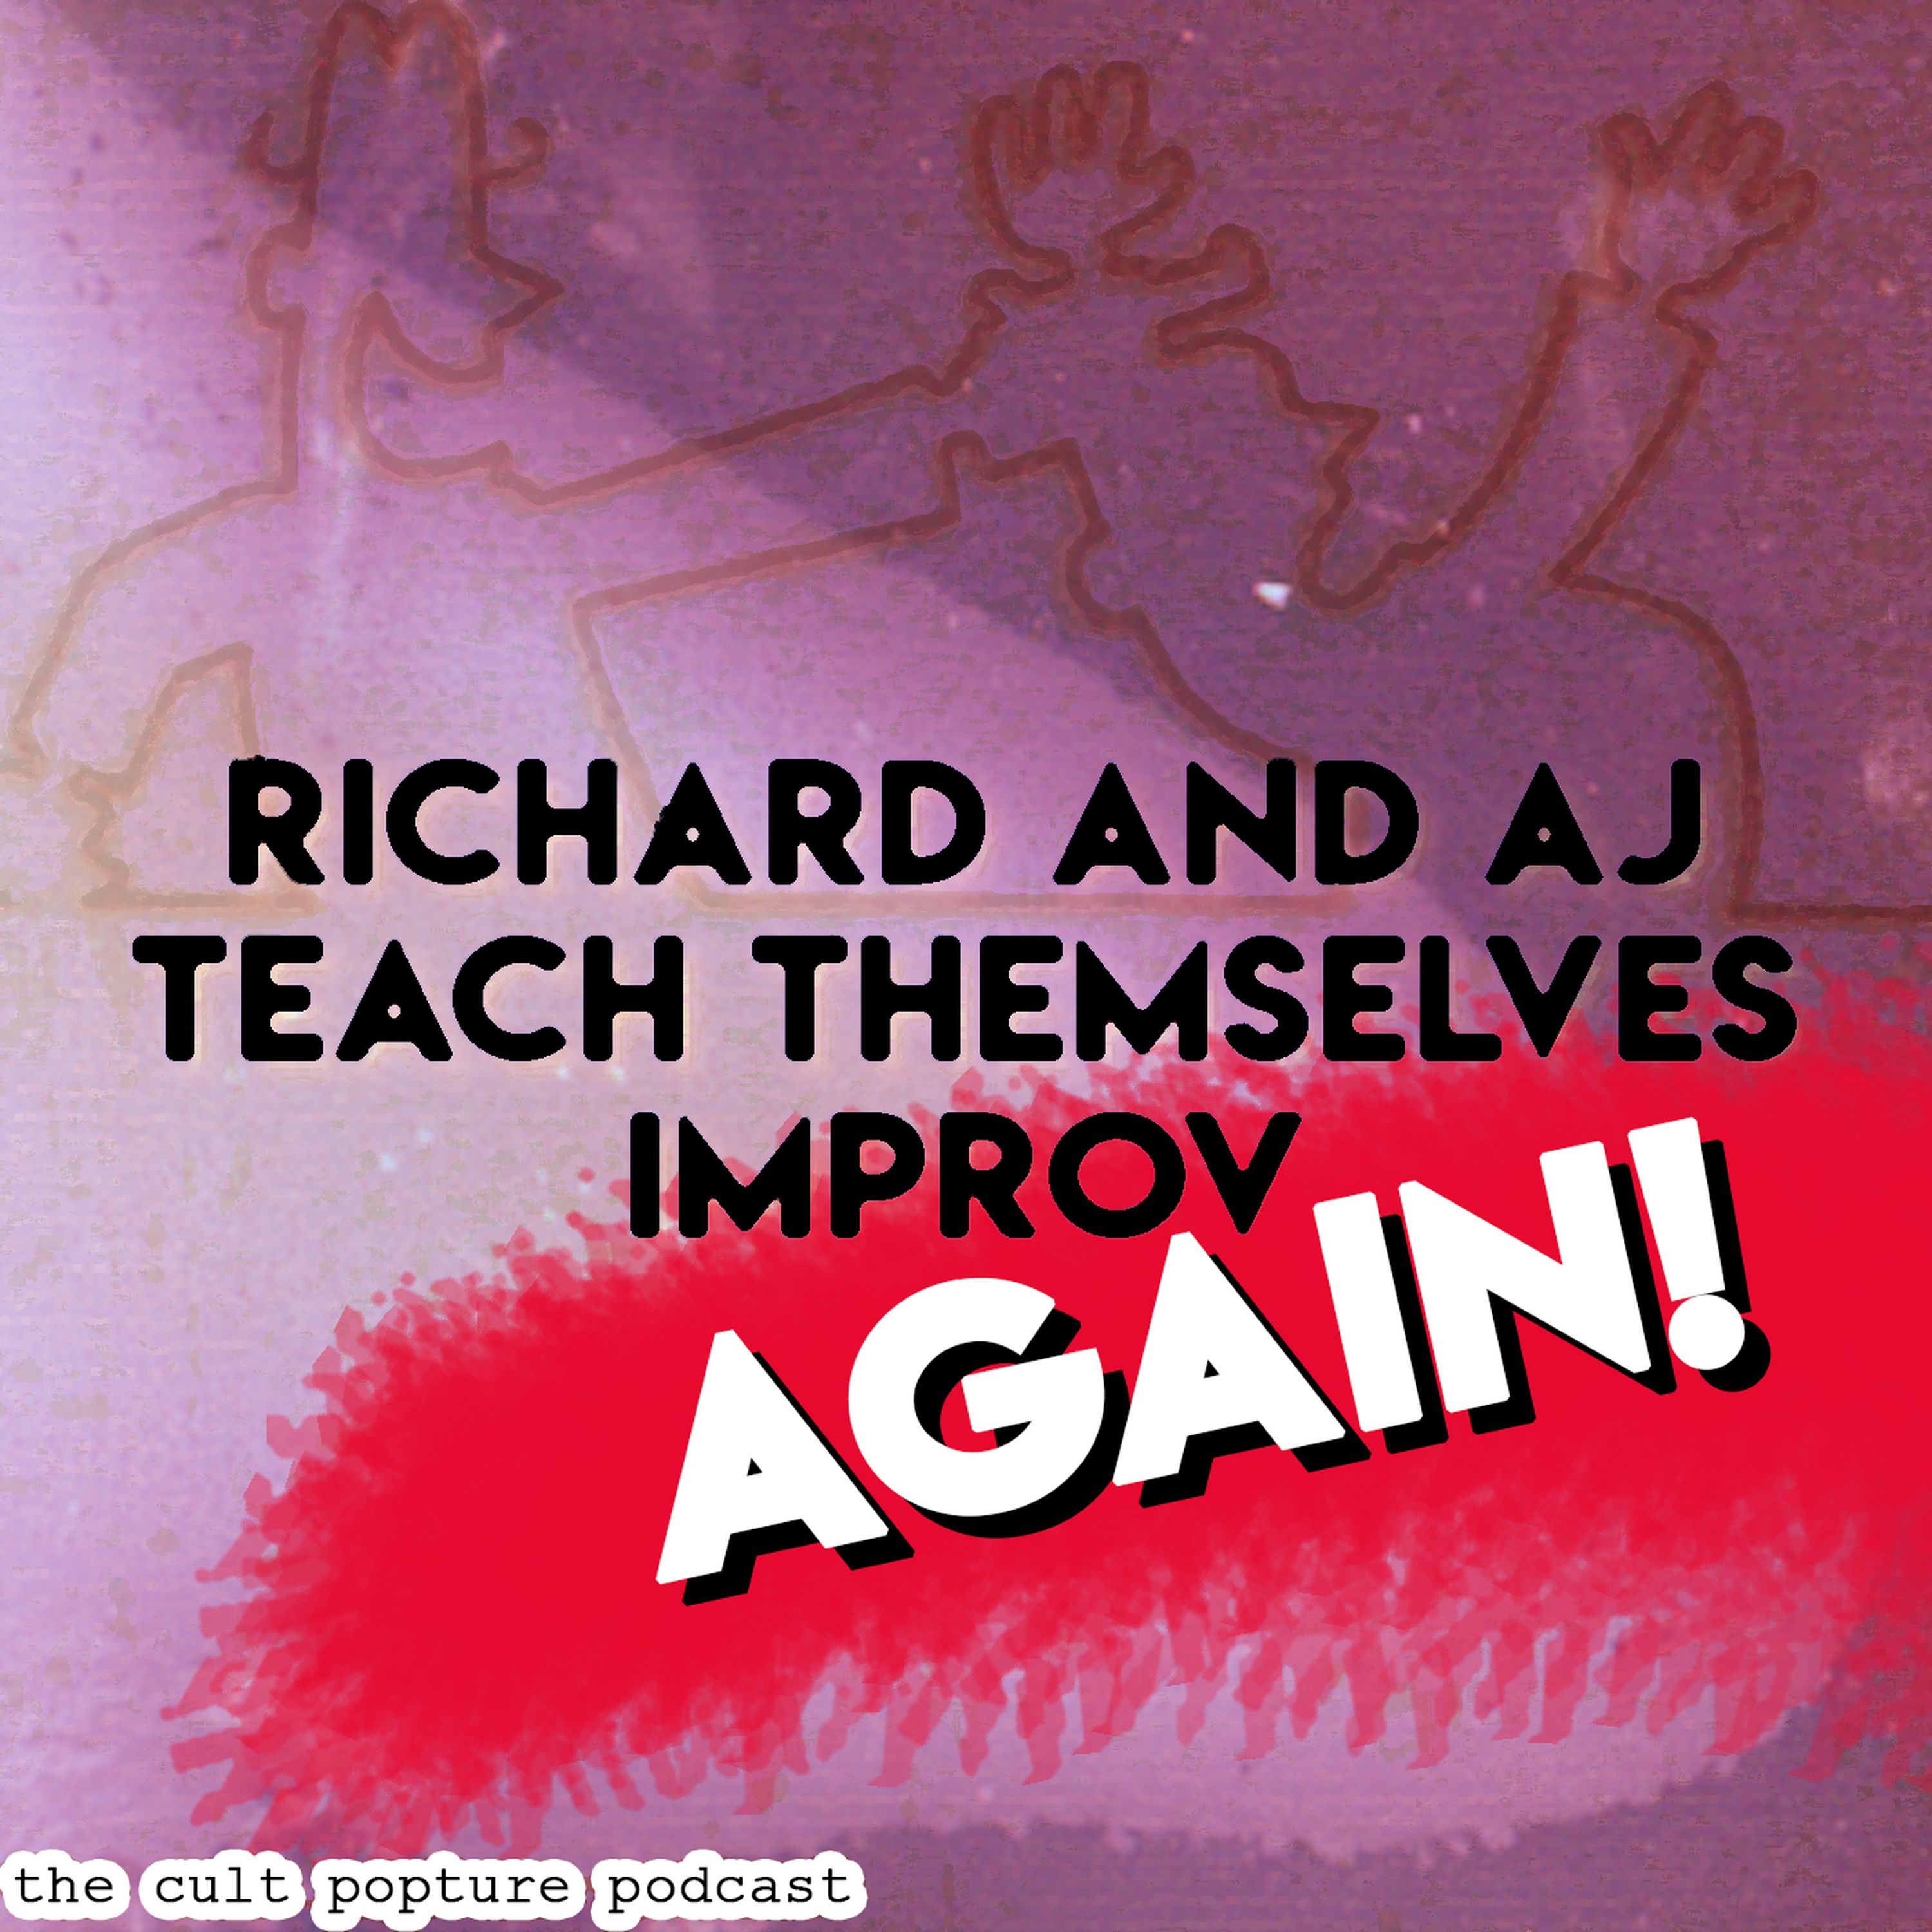 Richard and AJ Teach Themselves Improv AGAIN! | The Cult Popture Podcast